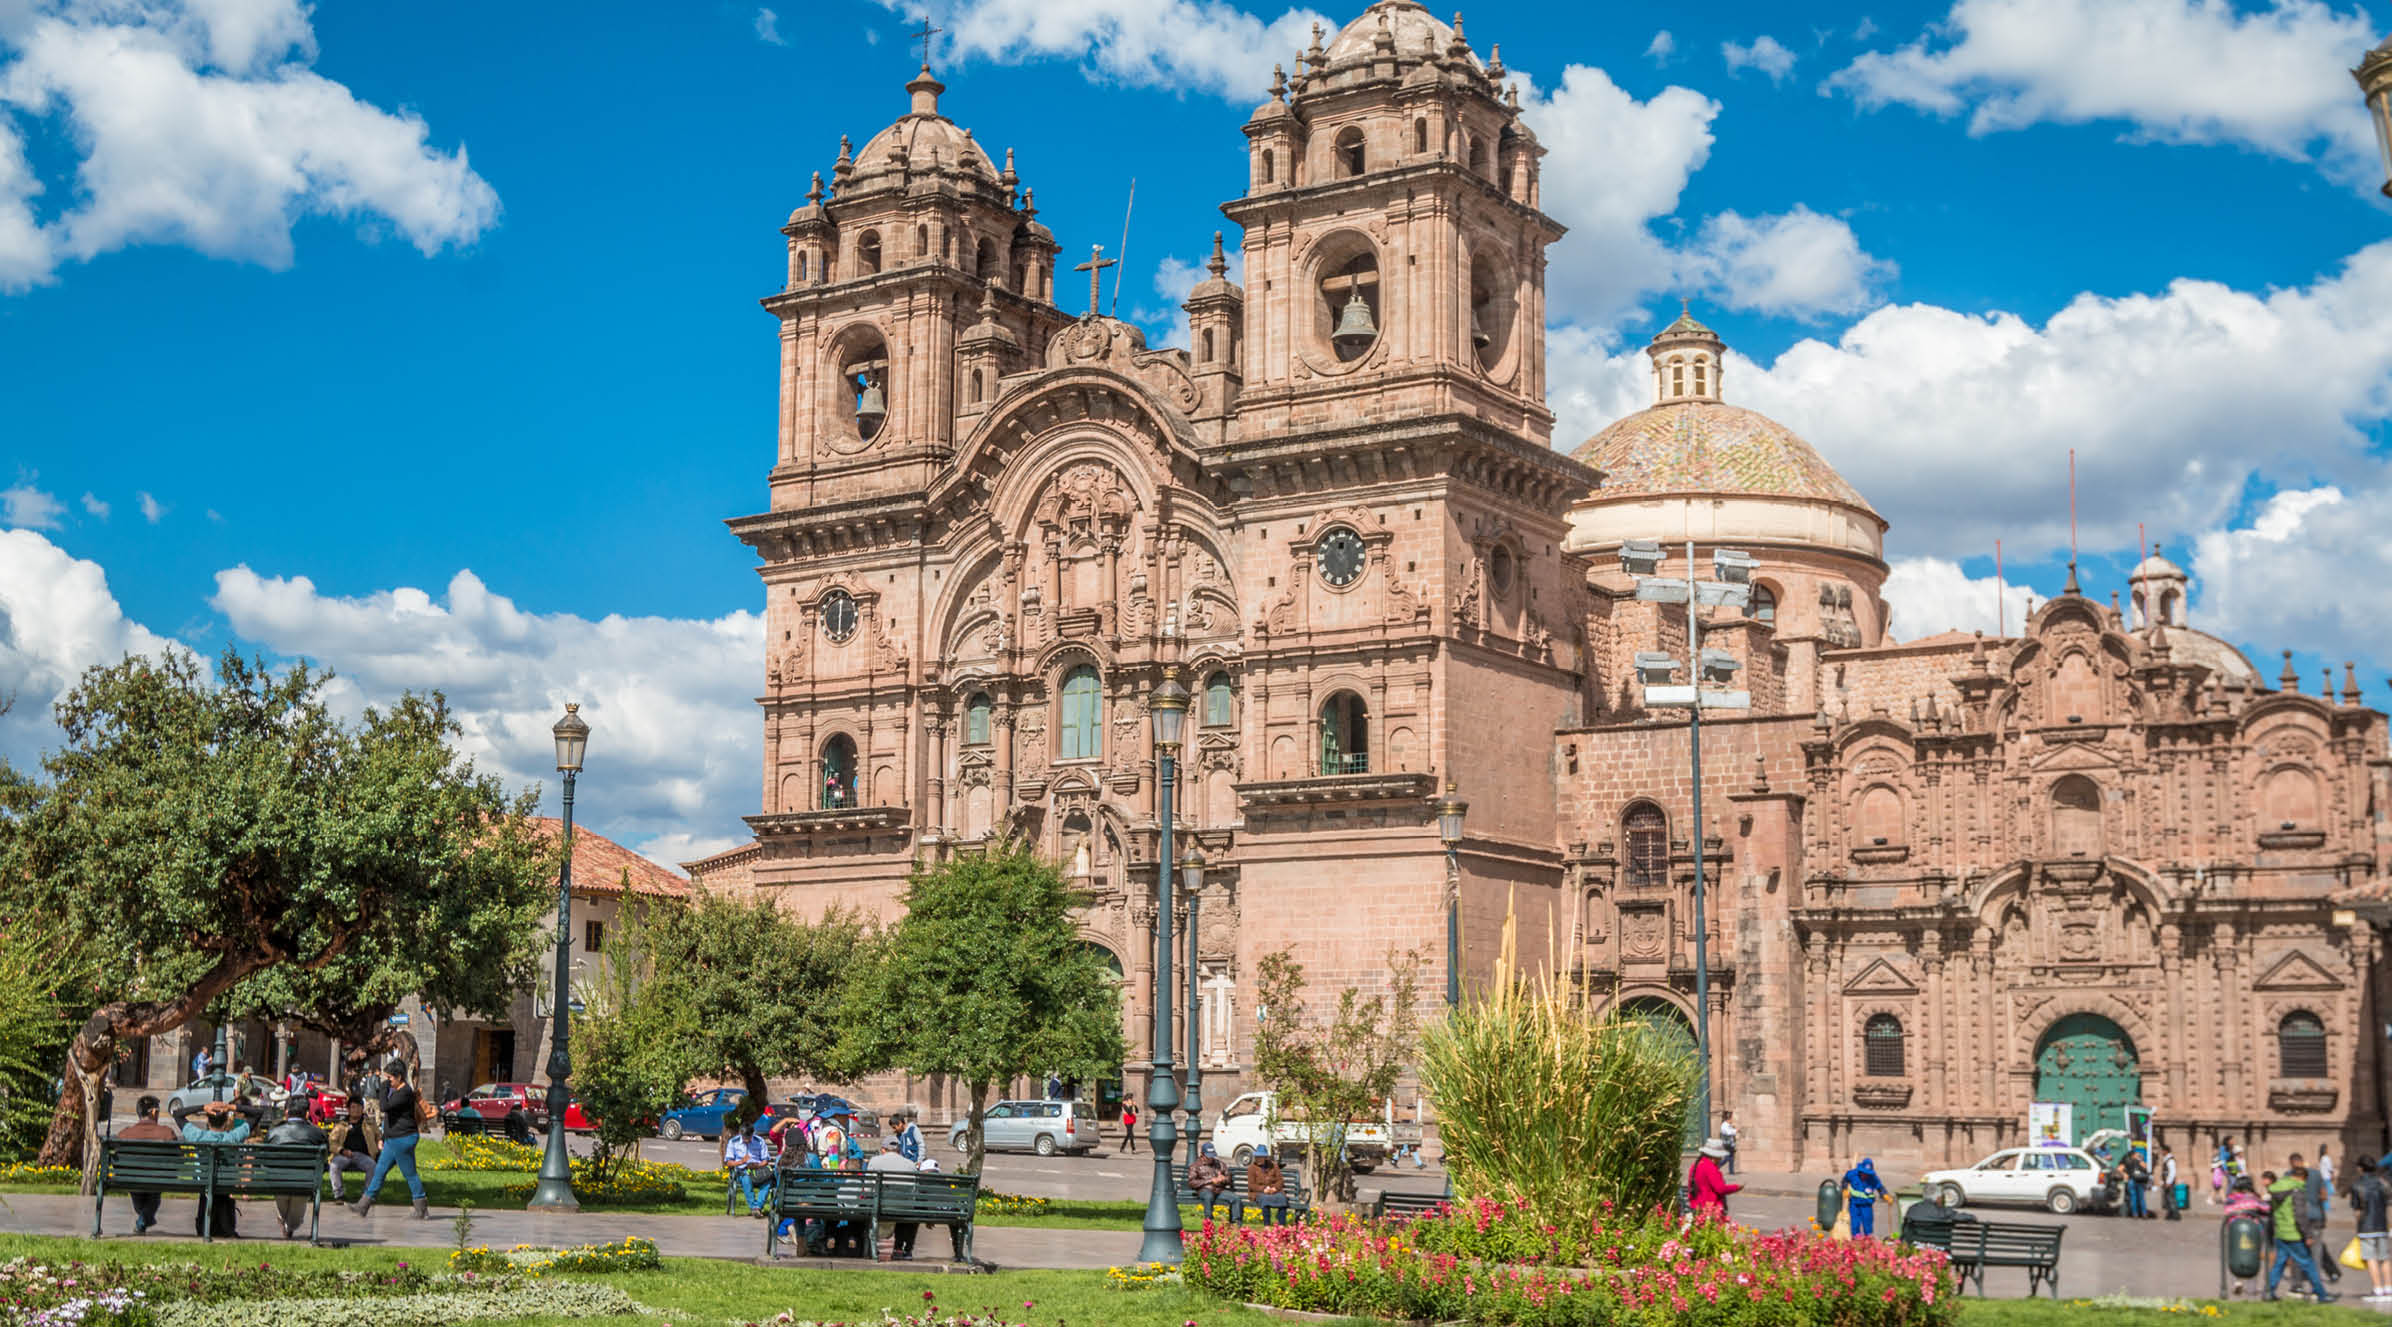 Plaza de Armas in Cusco Peru